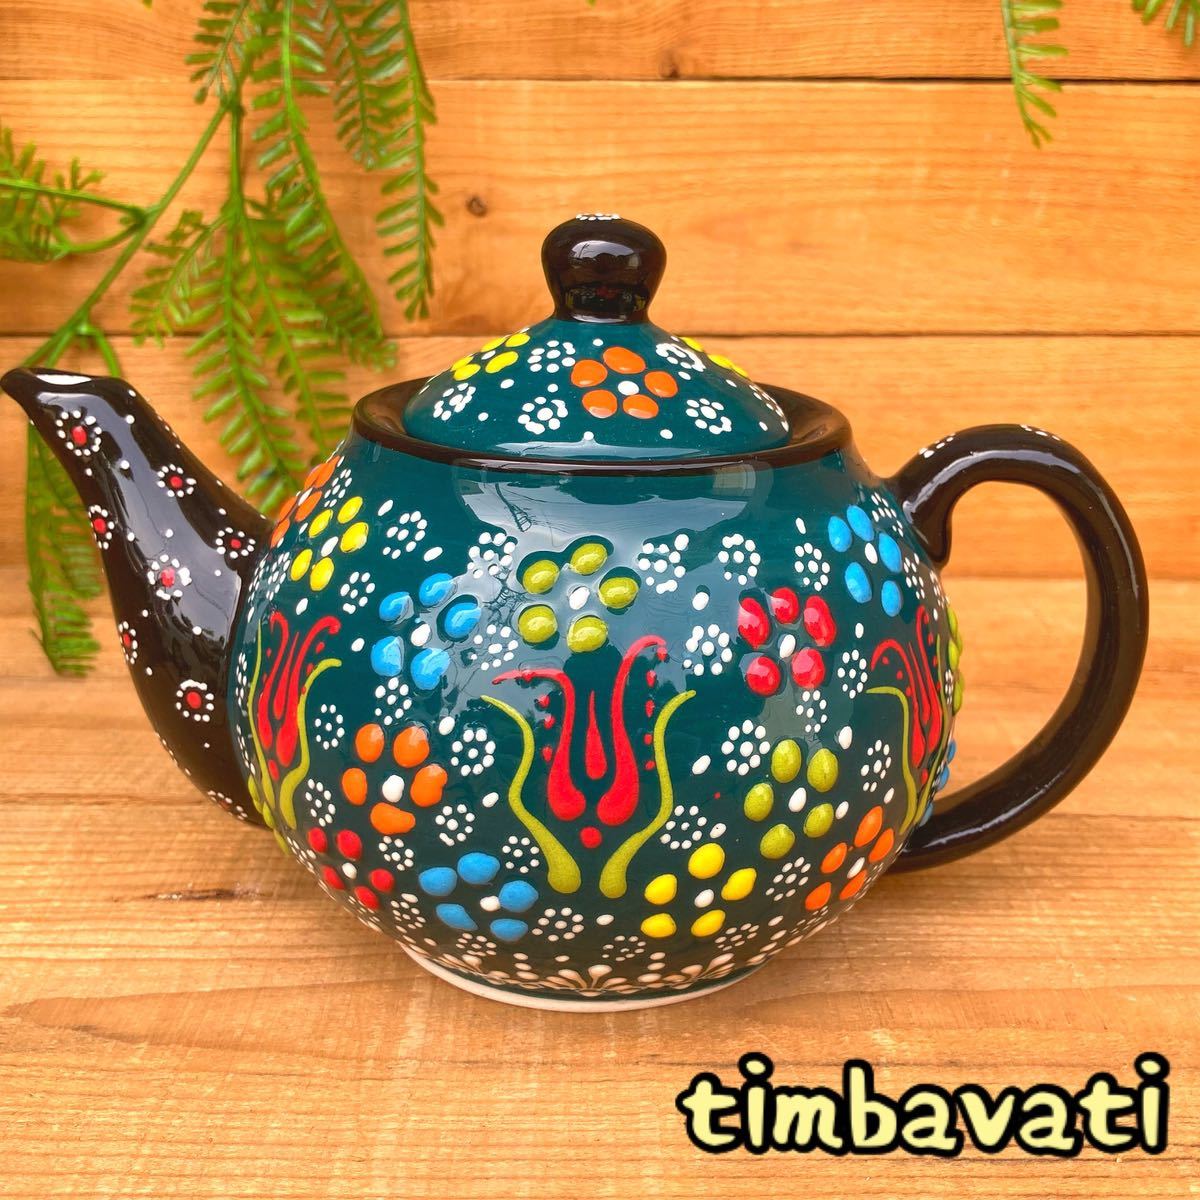 20cm☆Ganz neu☆Türkische Keramik Teekanne *dunkelgrün* Handgemachte Kutahya Keramik [Kostenloser Versand unter bestimmten Bedingungen] 117, Geschirr im westlichen Stil, Tee-Utensilien, Topf